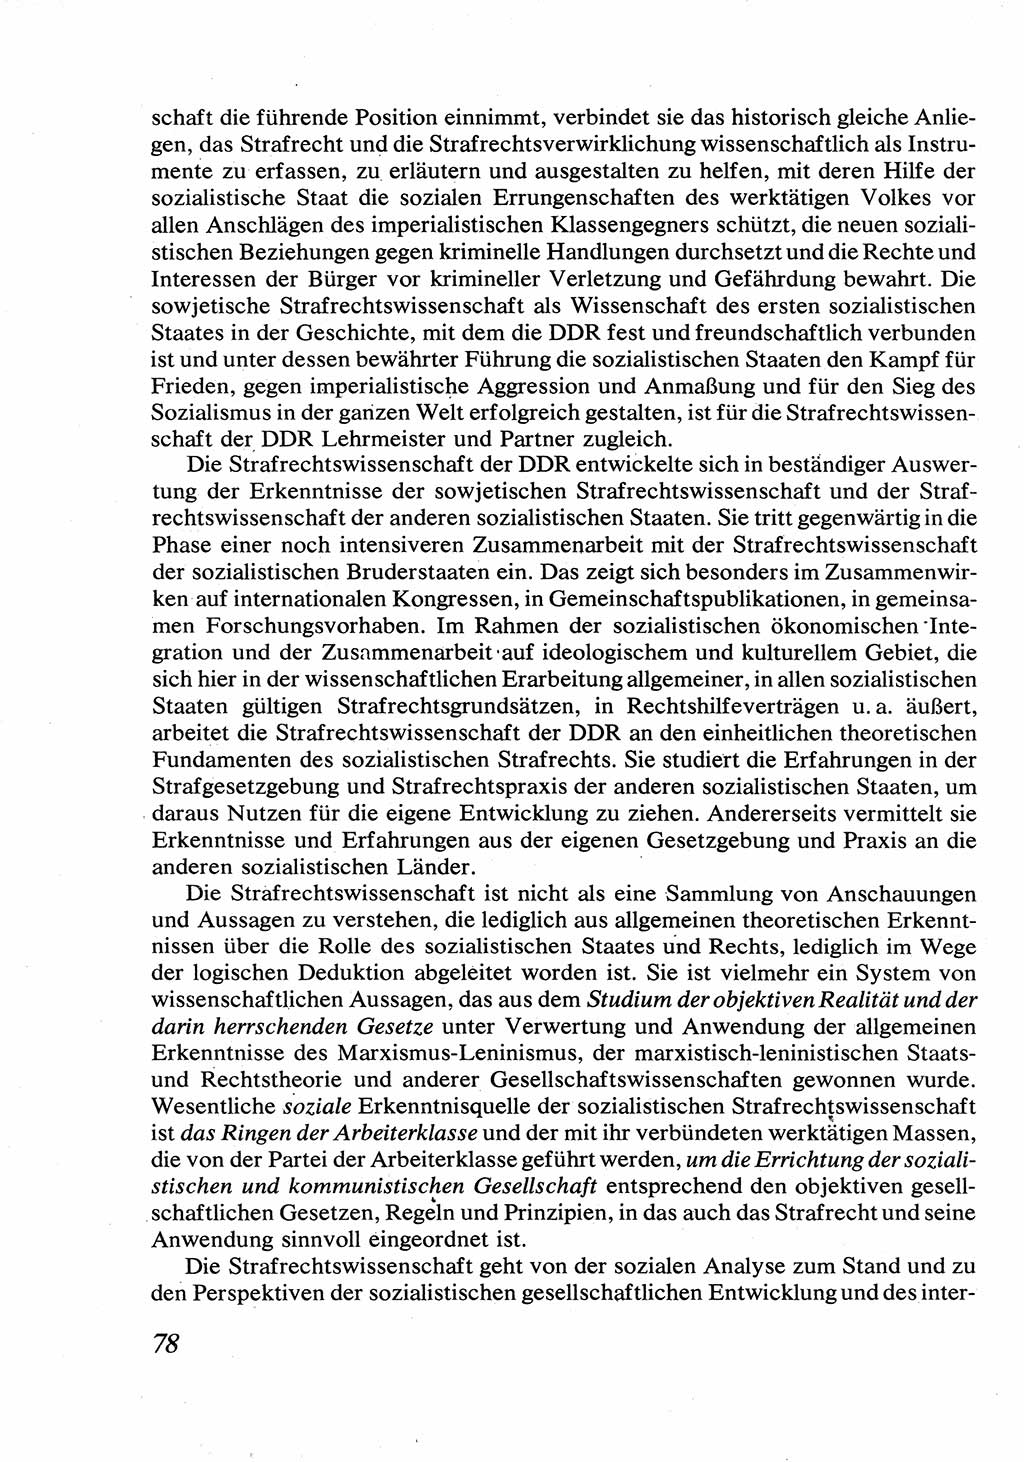 Strafrecht [Deutsche Demokratische Republik (DDR)], Allgemeiner Teil, Lehrbuch 1976, Seite 78 (Strafr. DDR AT Lb. 1976, S. 78)